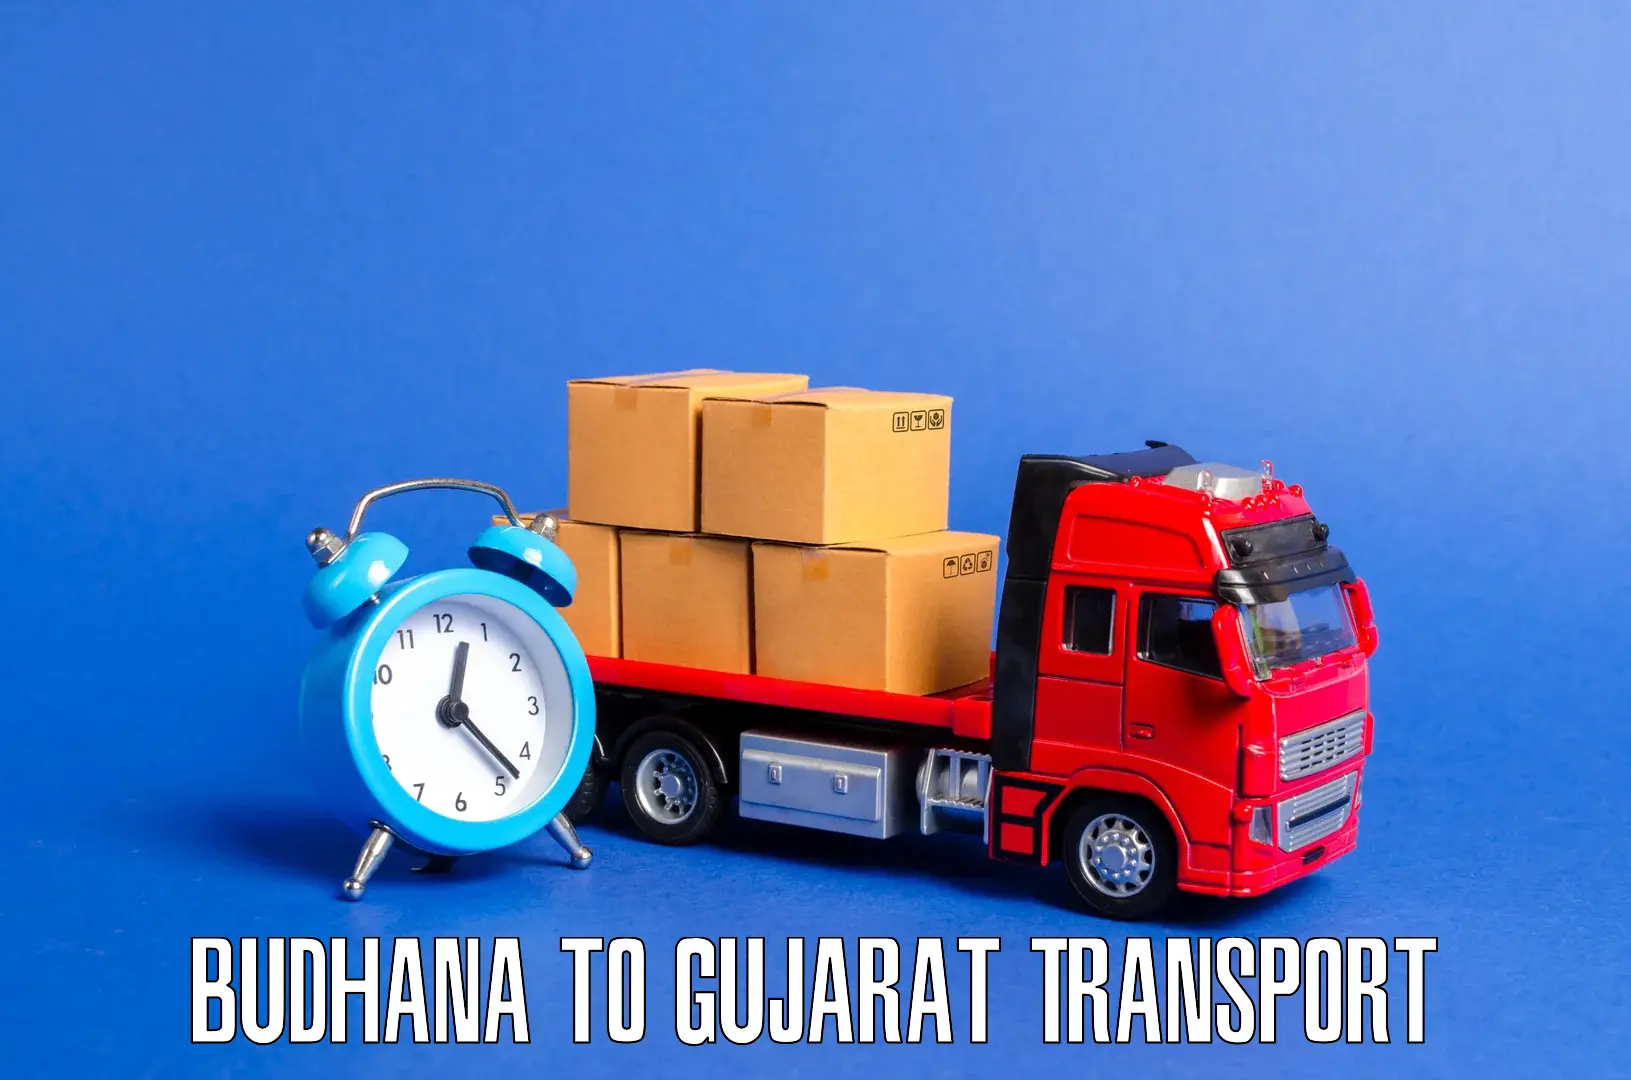 Nearest transport service Budhana to Vapi